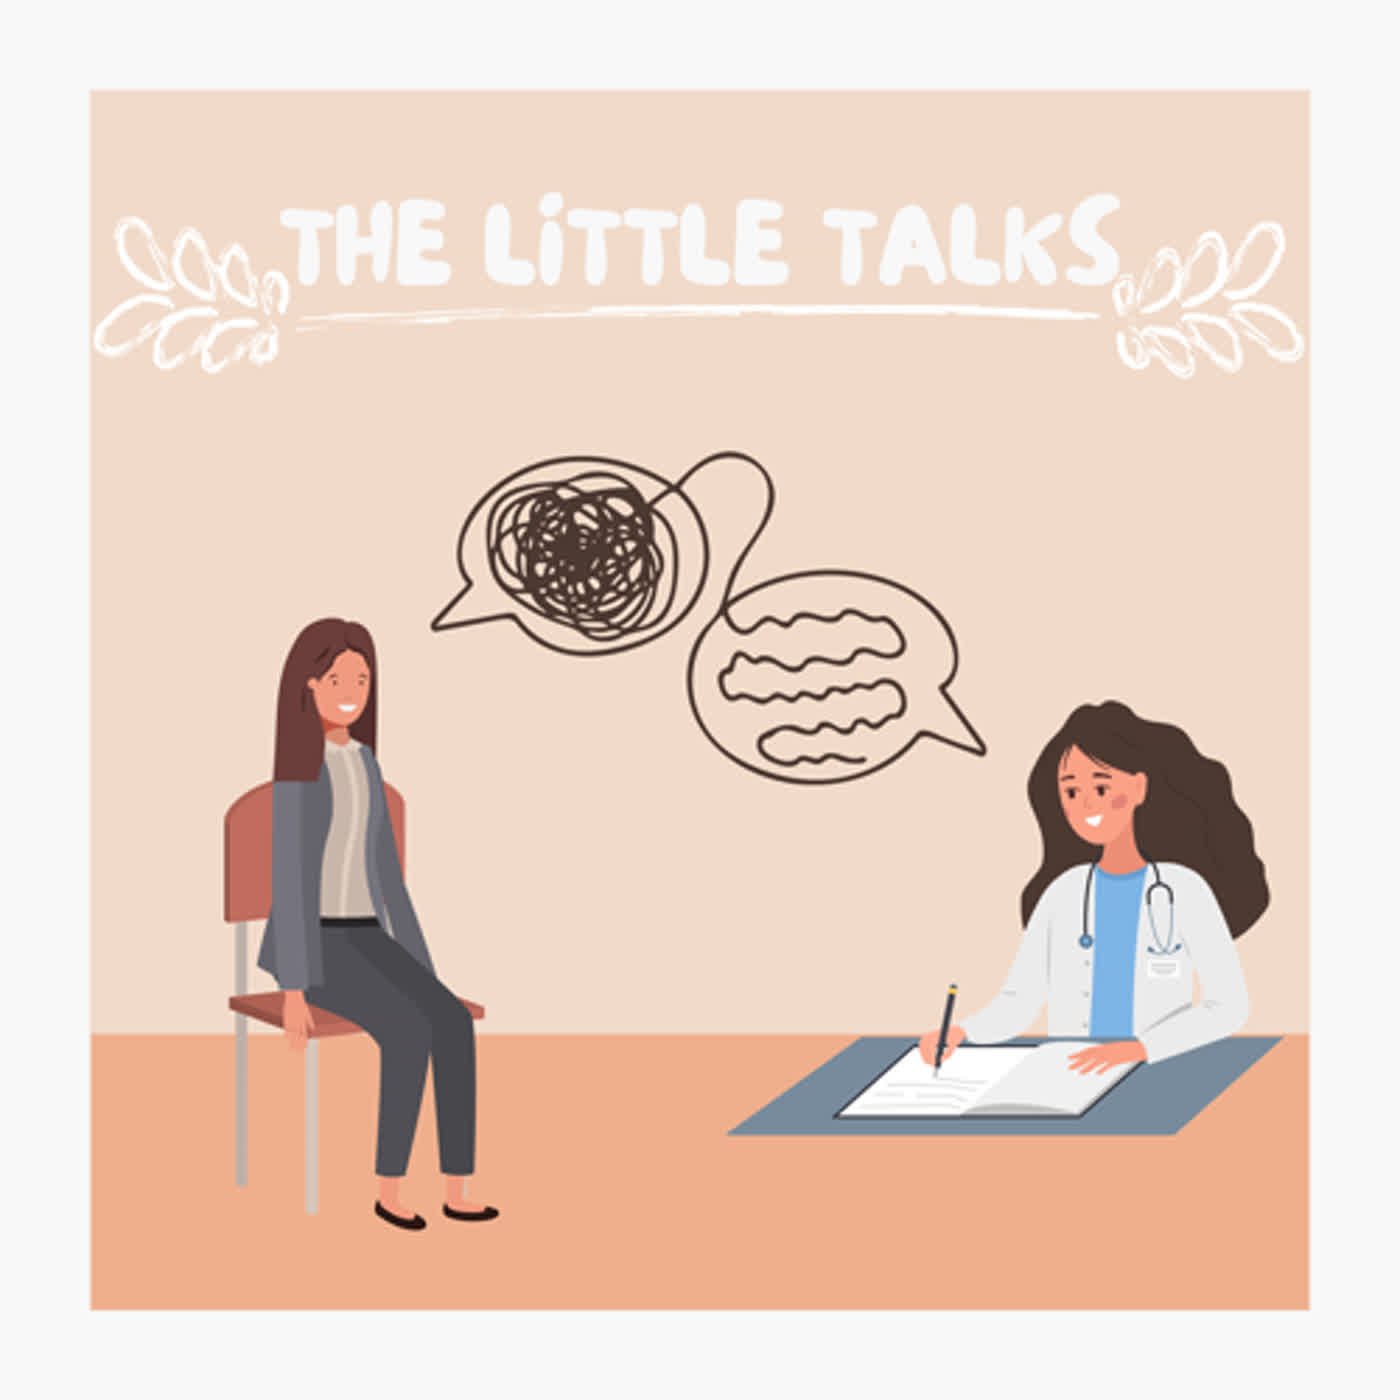 The little talks